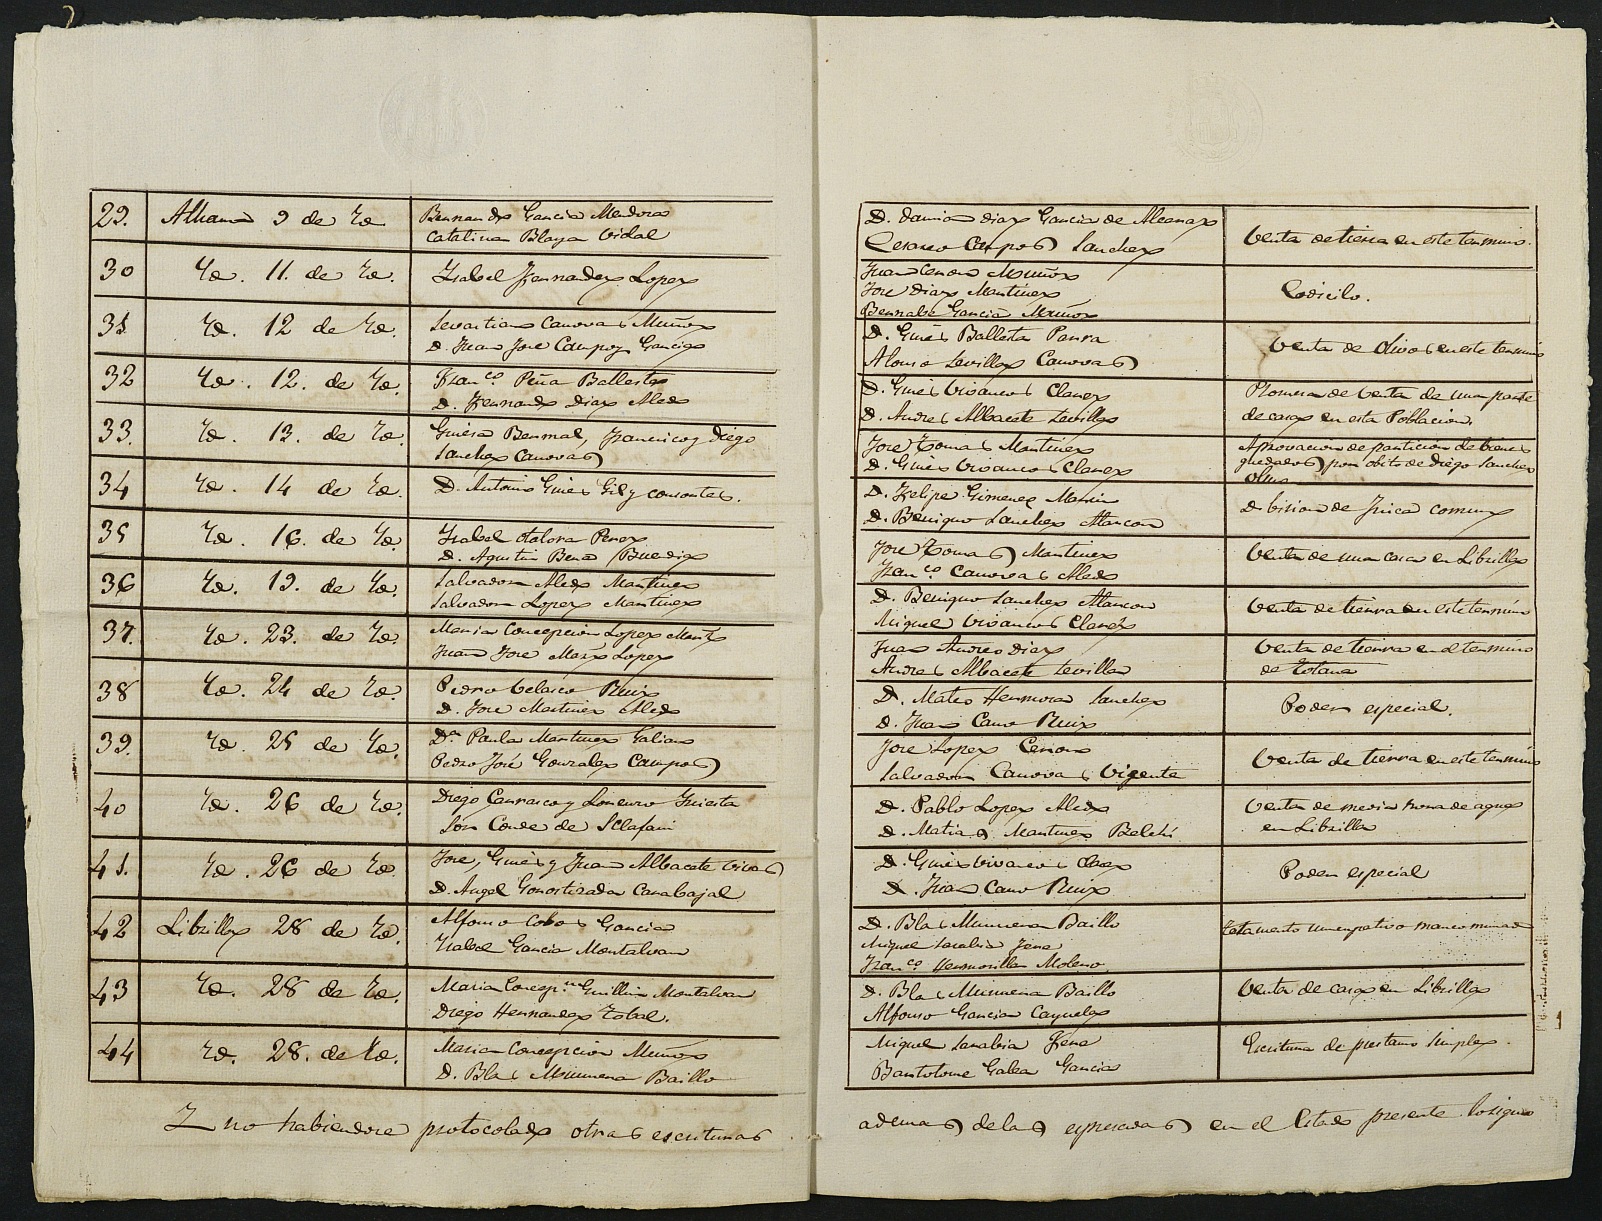 Índices de escrituras del notario Sixto Zamora Quetenti, Alhama de Murcia. Año 1875, enero-noviembre.